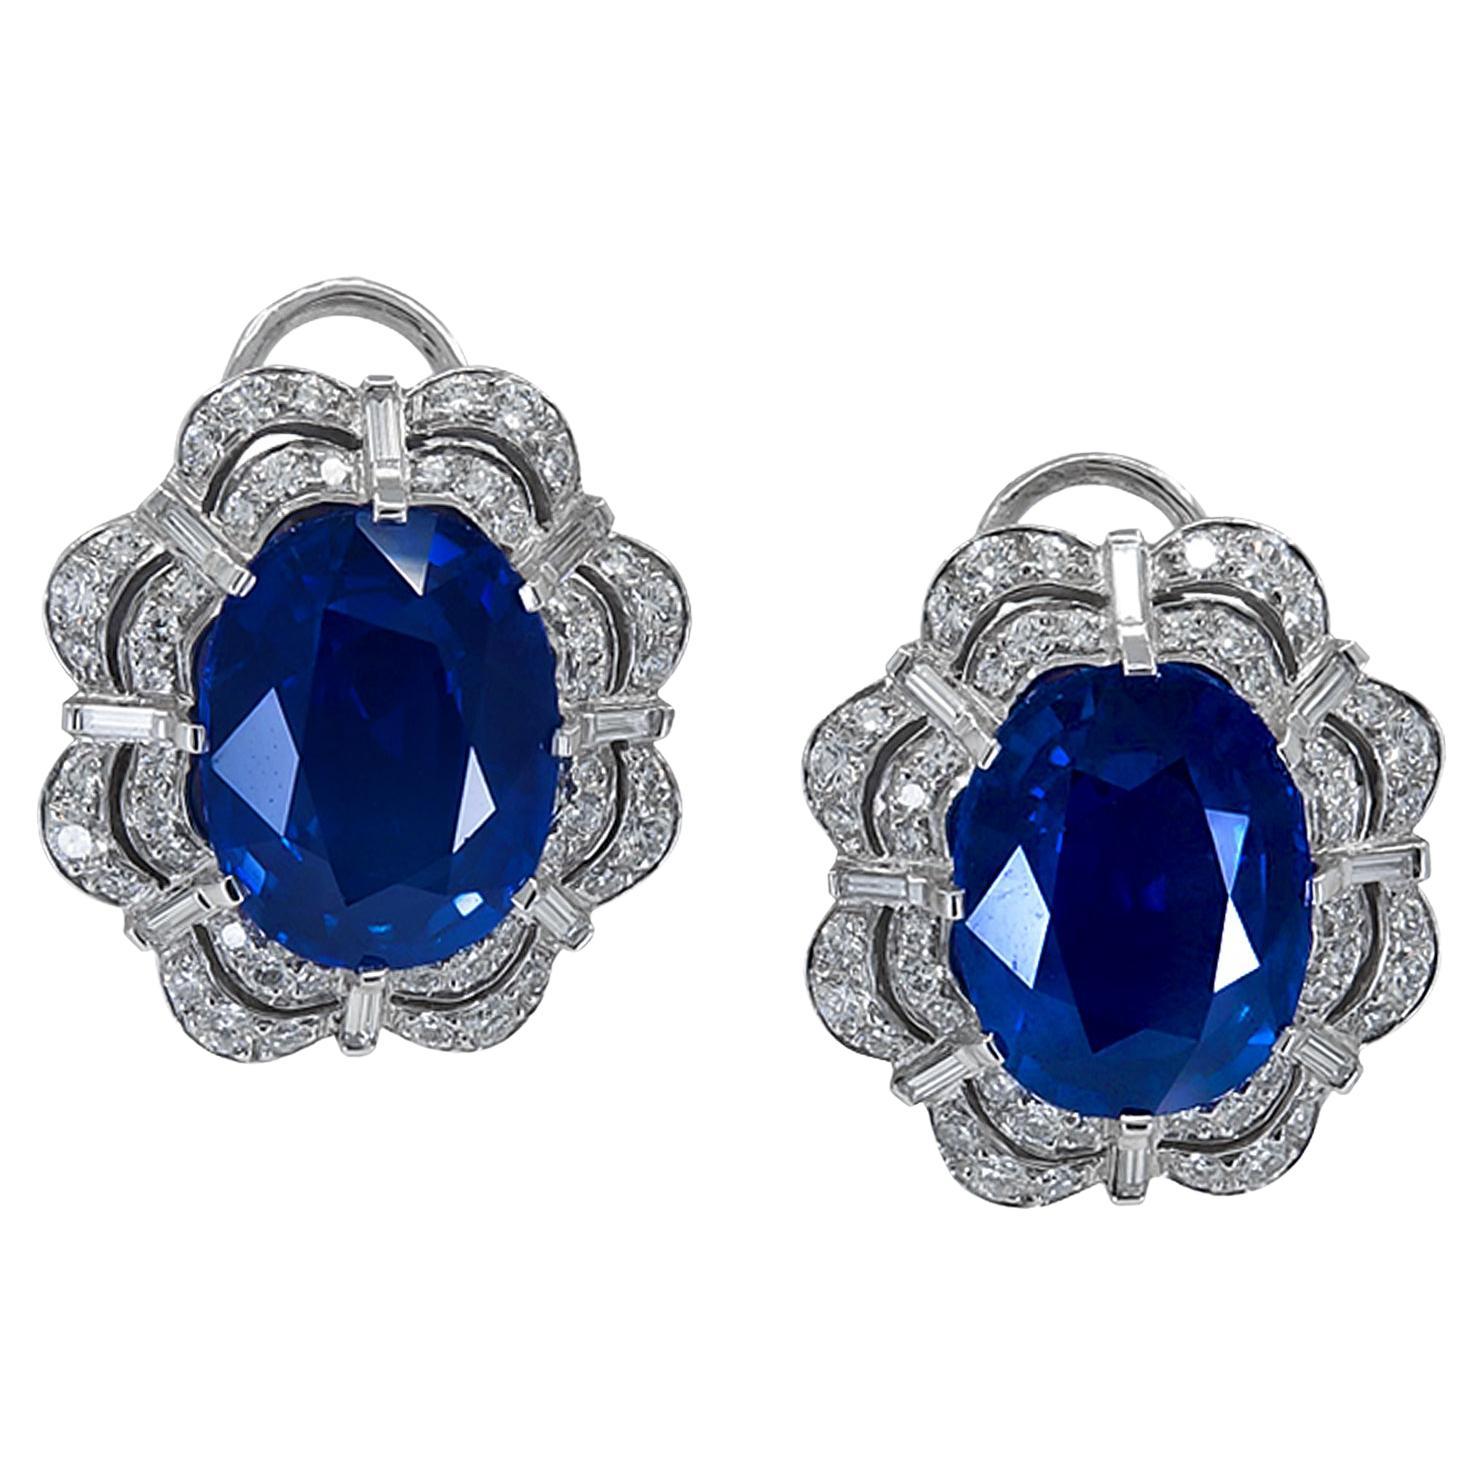 Spectra Fine Jewelry AGL Certified 21.28 Carat Sapphire Diamond Earrings